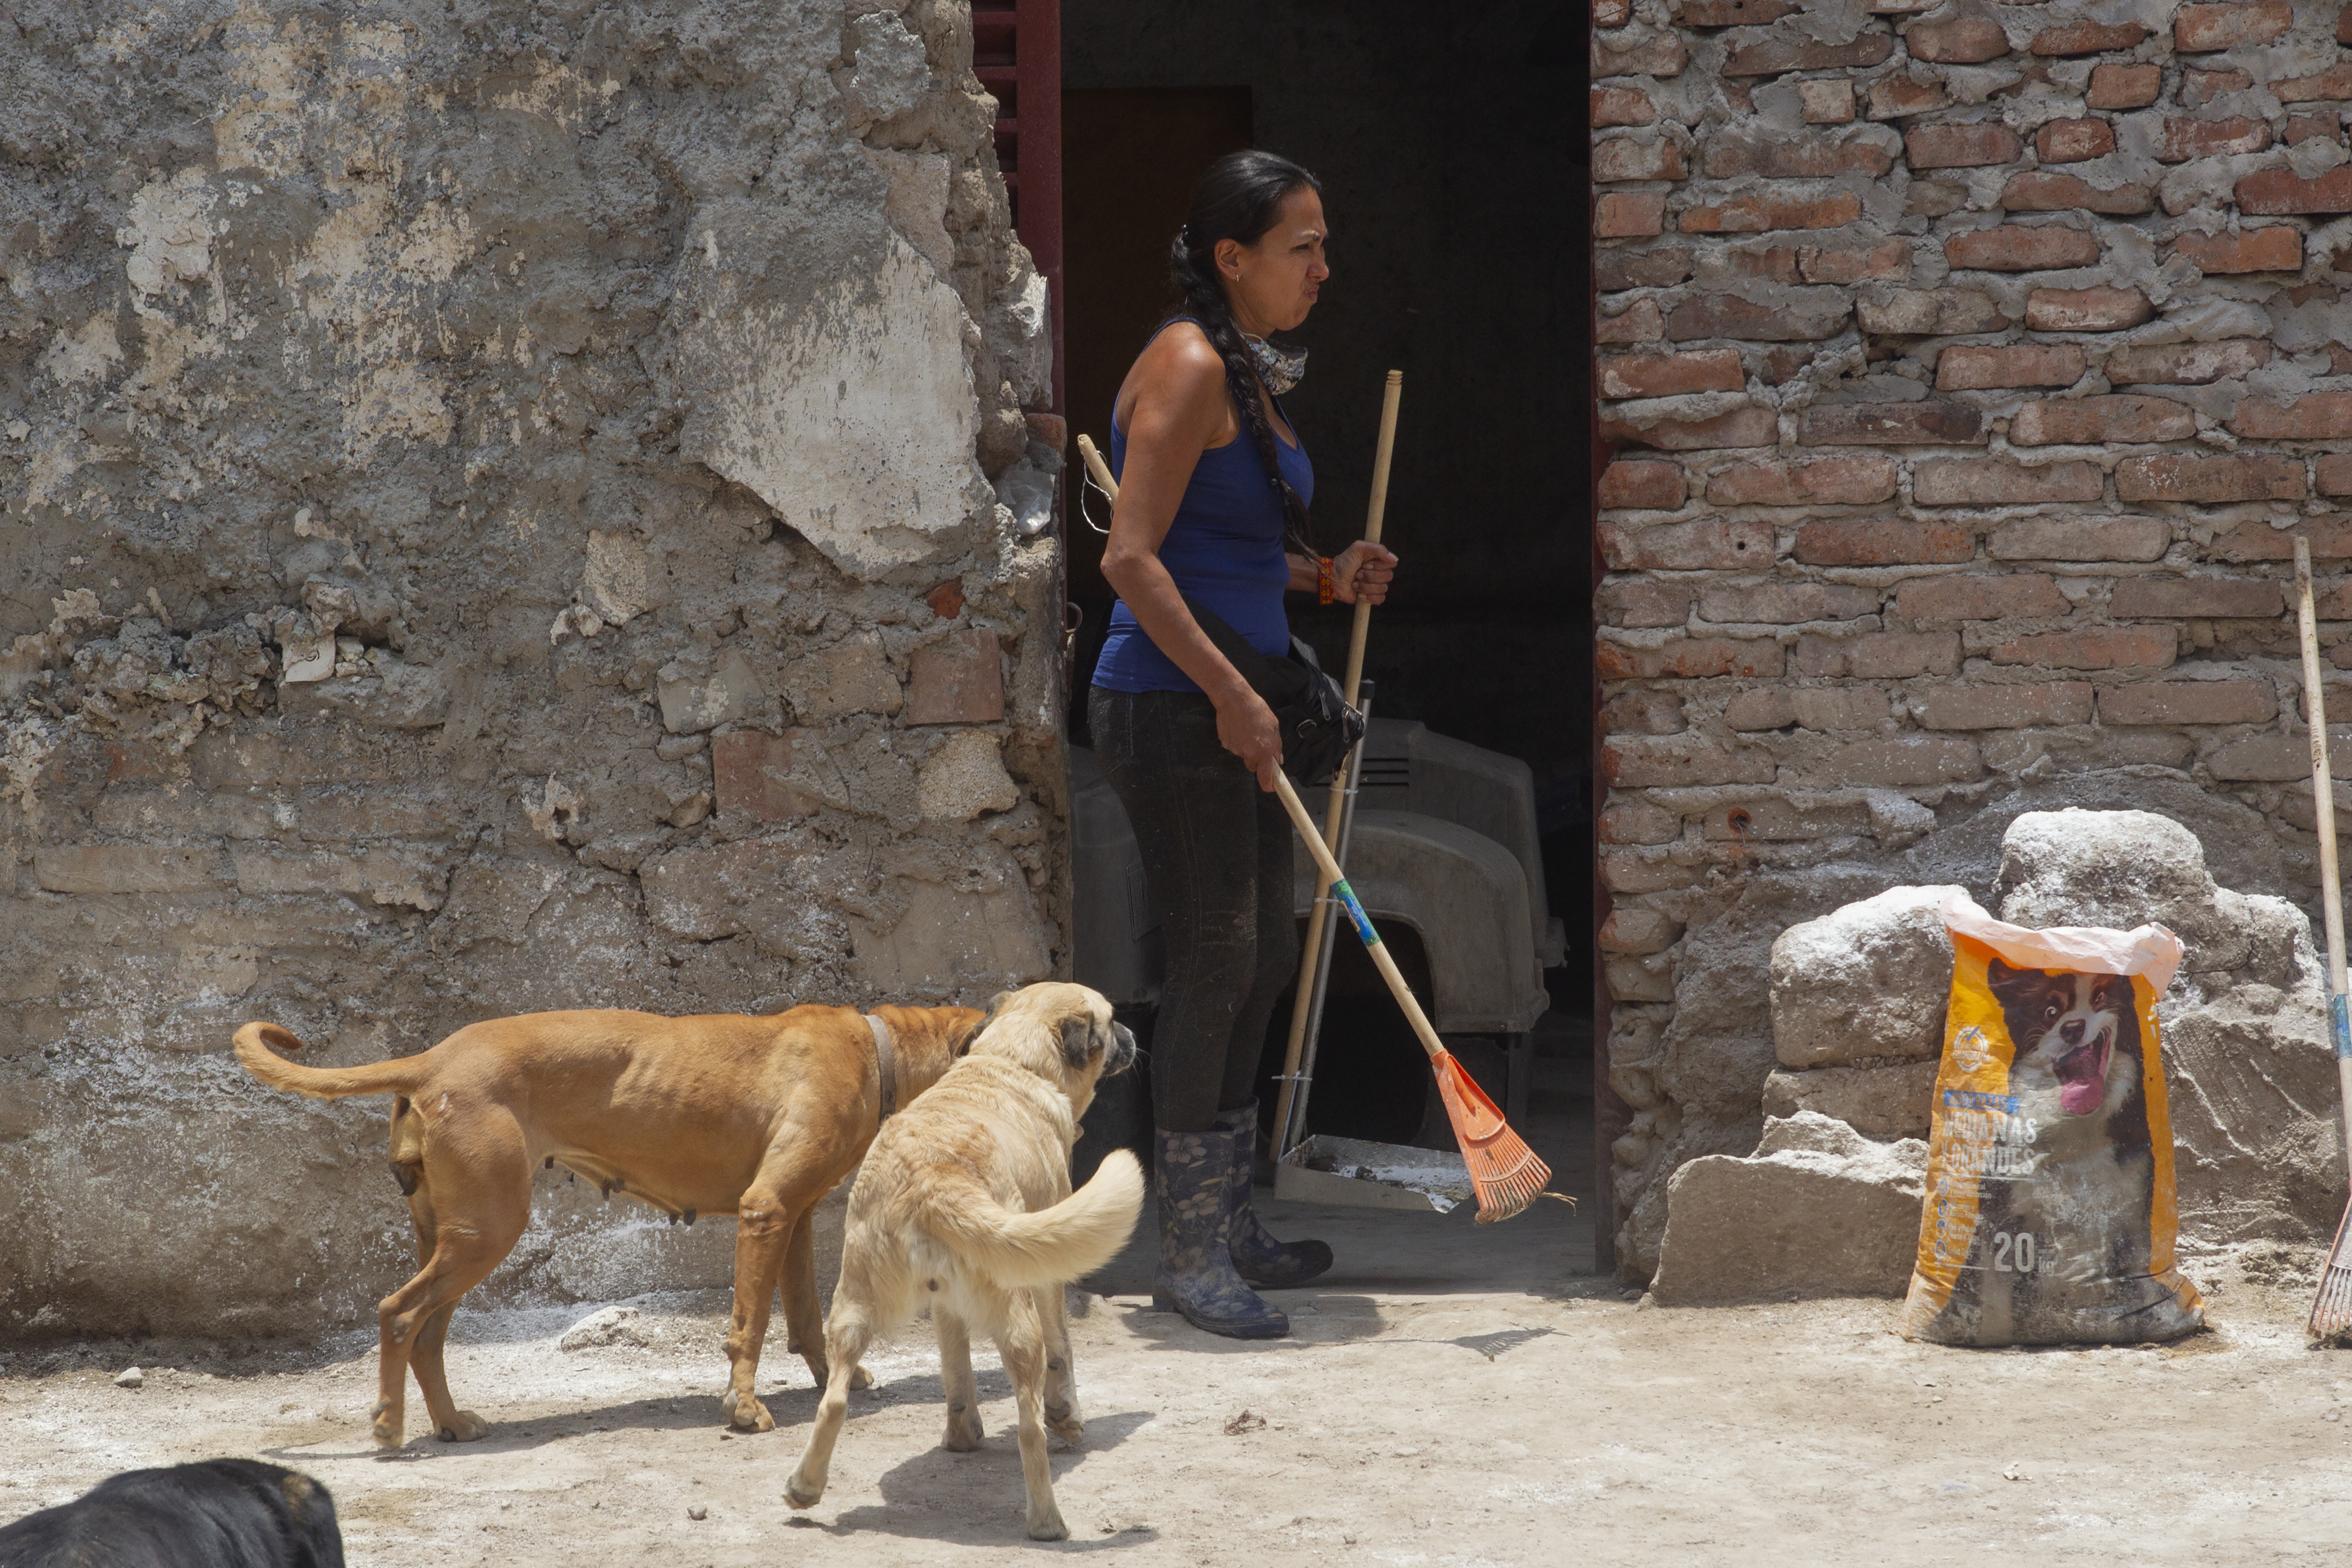 Dinah junto a sus perros mientras hace limpieza en Adopta Amor, albergue dedicado al rescate de perros y gatos. Ciudad de México, mayo 28, 2021.Foto: Karina Hernández / Infobae